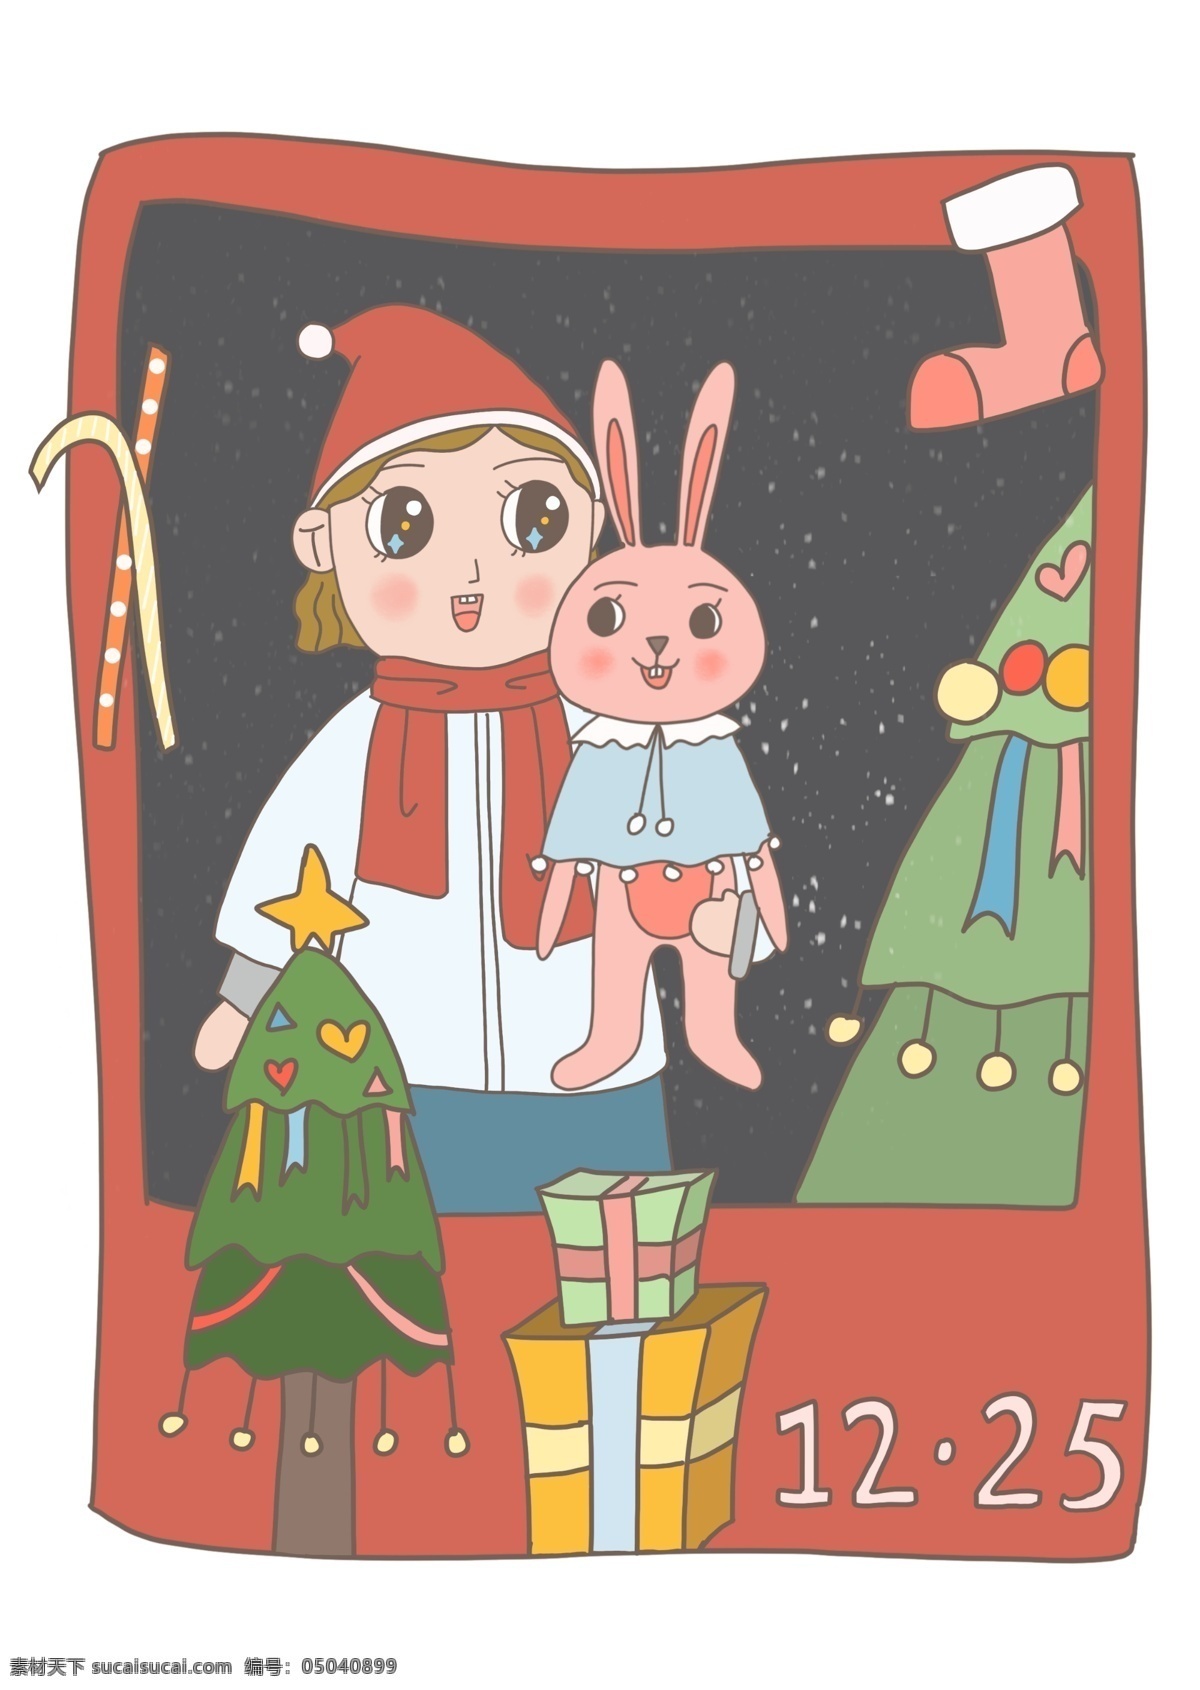 透明 底 圣诞节 纪念 照片 圣诞纪念照片 圣诞帽子 糖果袜子 礼物袜子 红帽子 圣诞快乐 过圣诞节 可爱 圣诞礼物 兔子玩偶